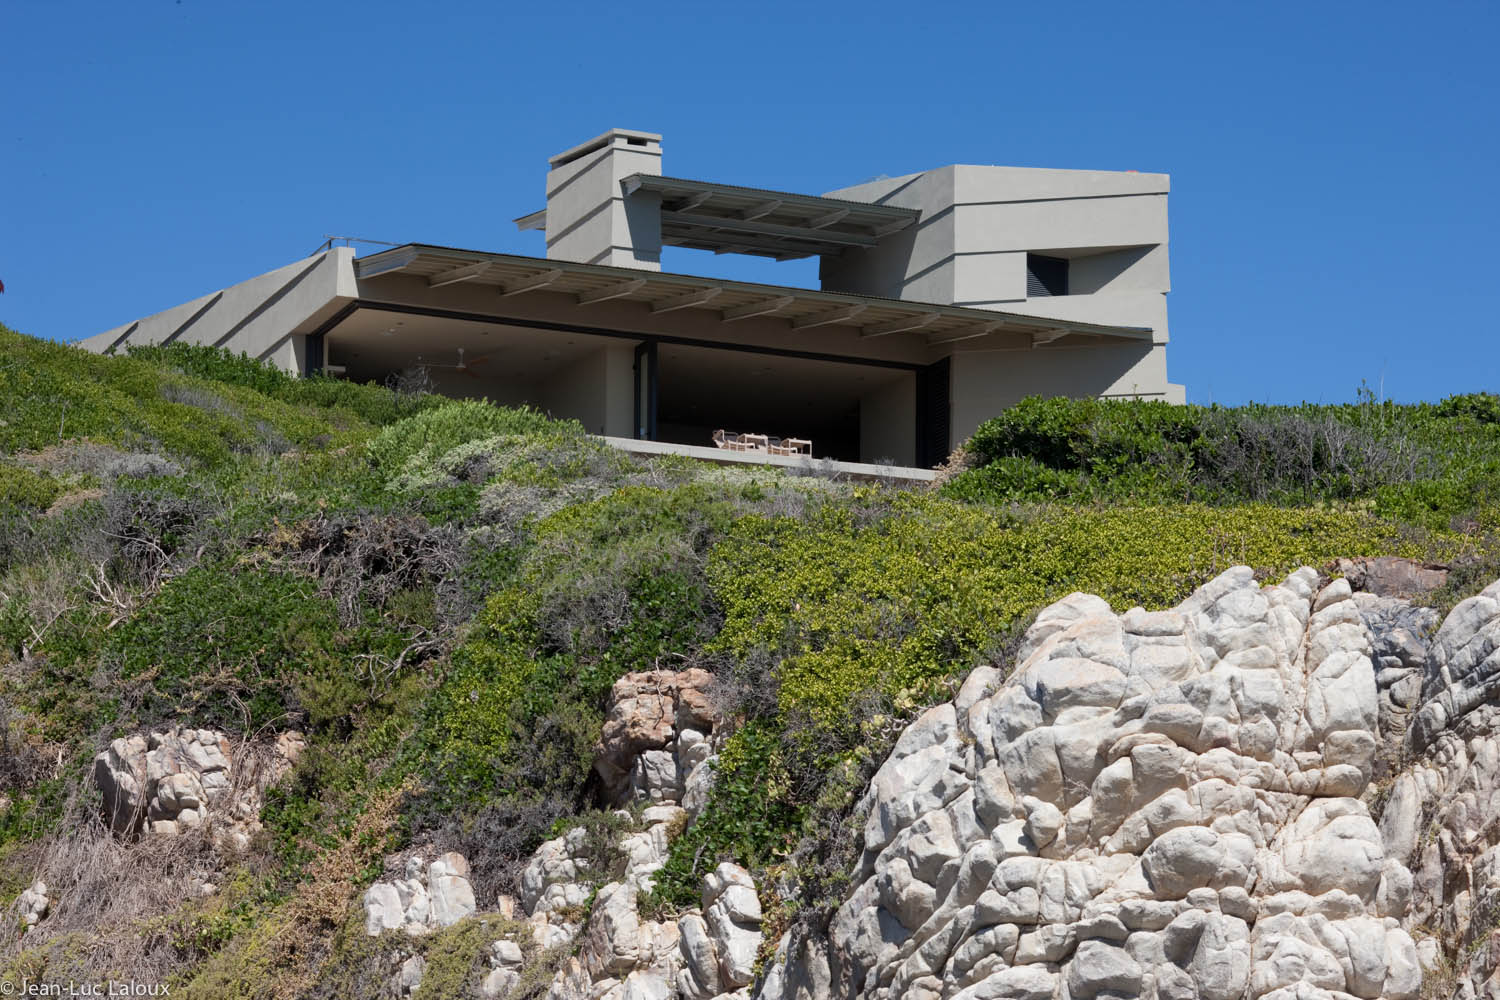 Slee & Co. Architects : De Kelders Beach House | Flodeau.com